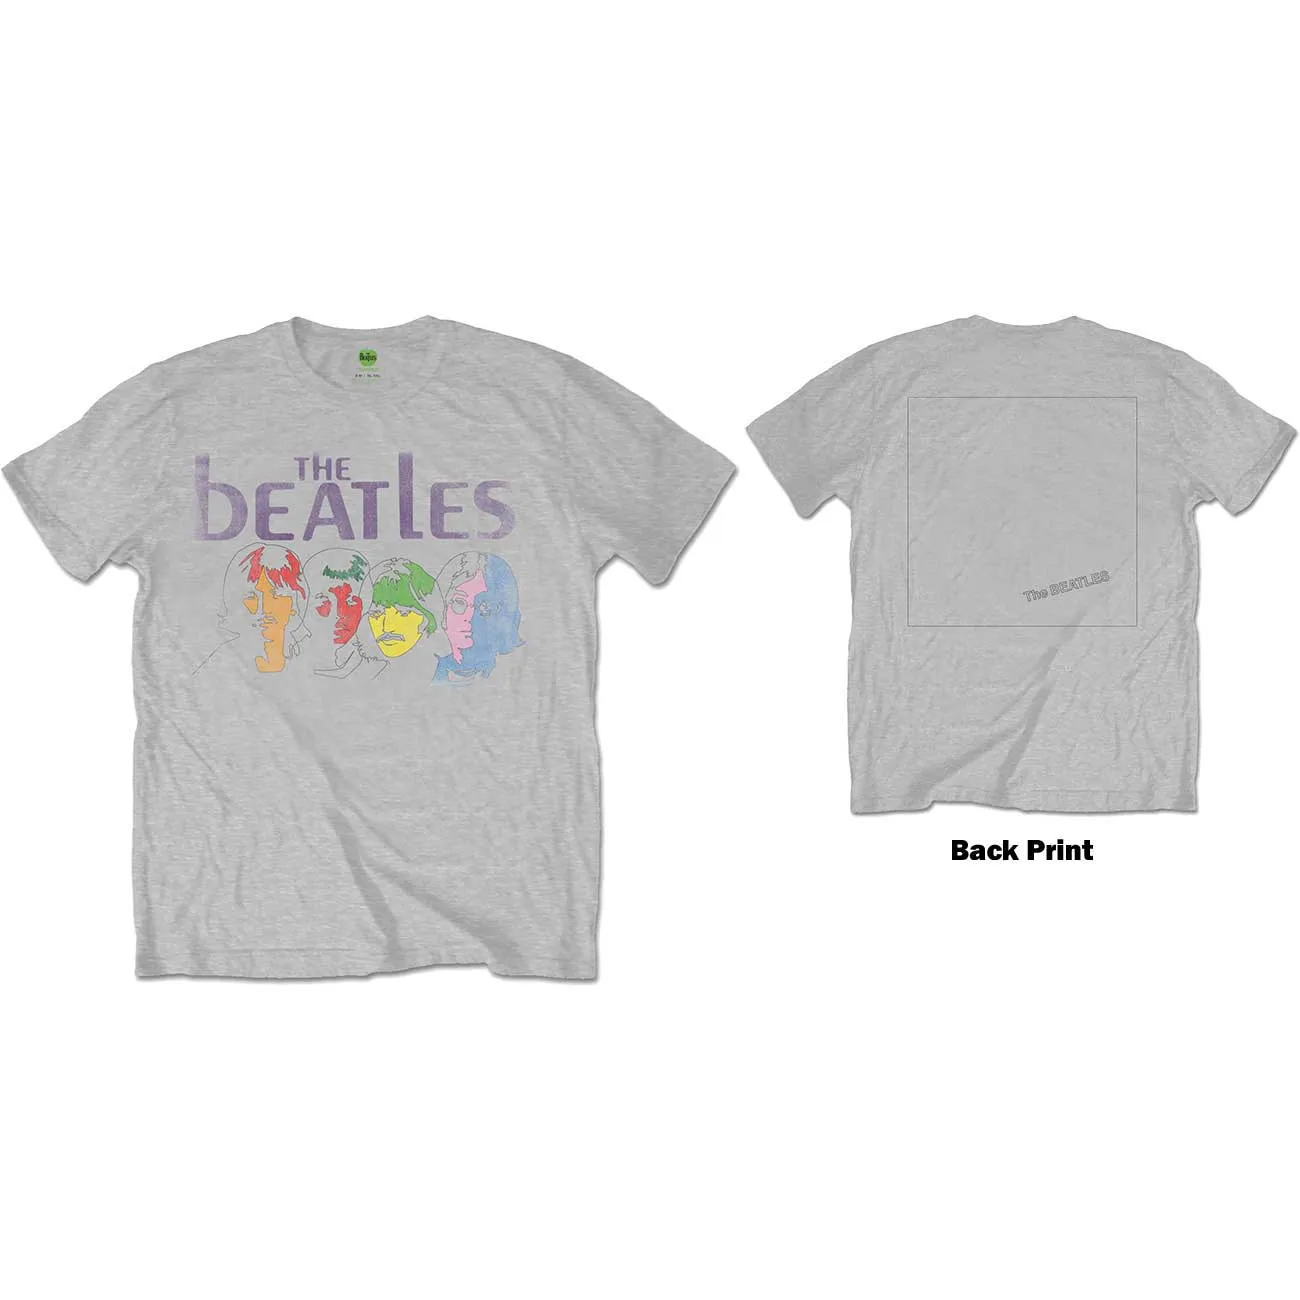 The Beatles - Unisex T-Shirt White Album Back Back Print artwork